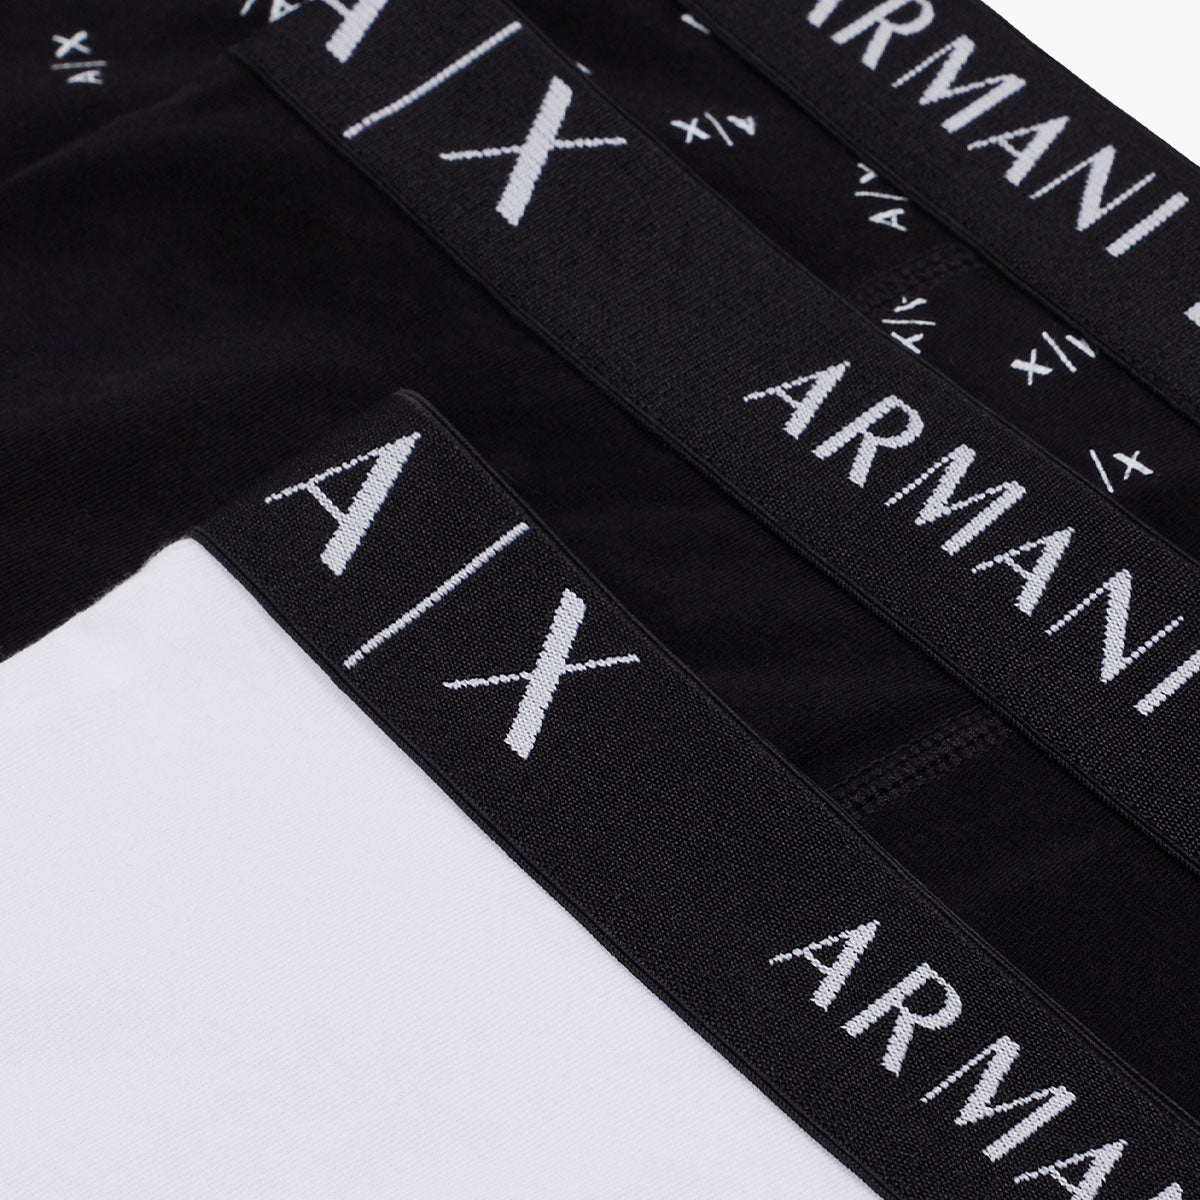 Armani Exchange 3 Pack Underwear Set | LEVISONS